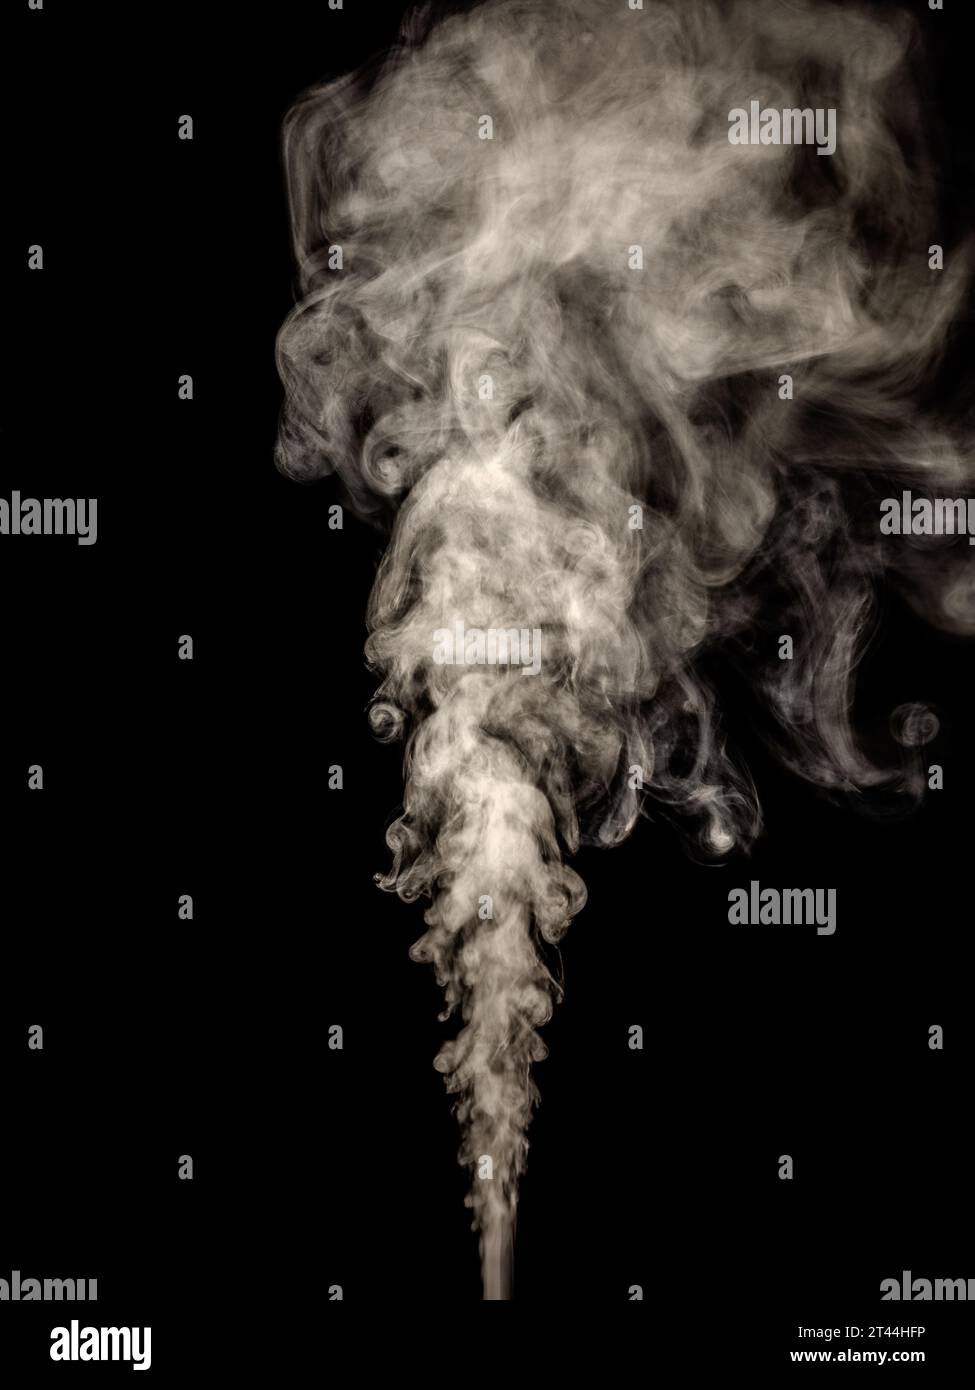 Fumo bianco spesso isolato su sfondo nero, innalzando i tuberi verso l'alto come effetto astratto Foto Stock